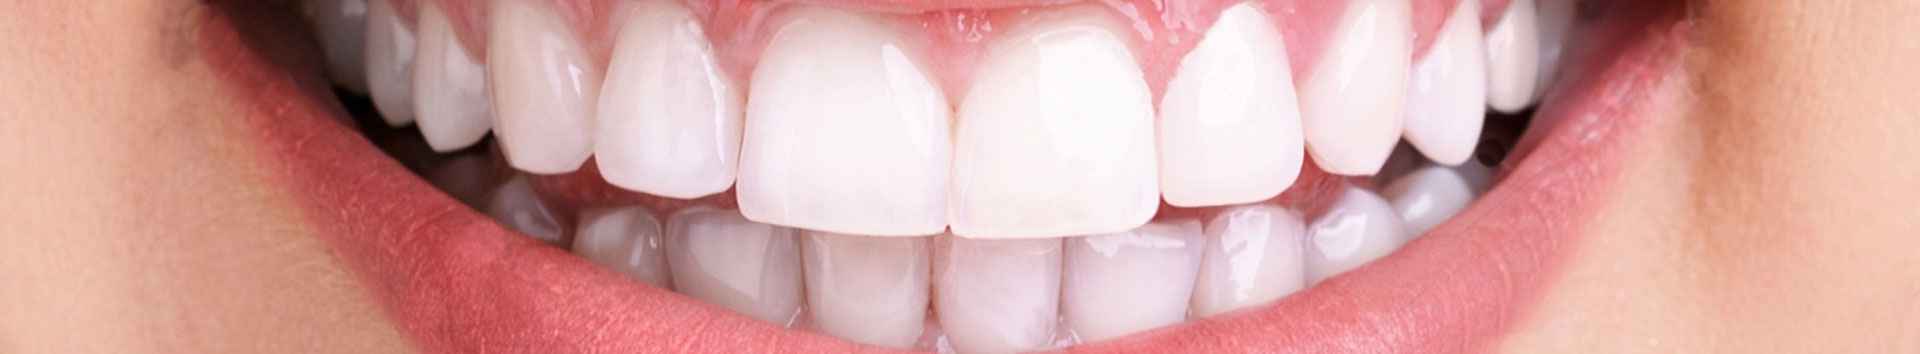 Raspagem periodontal: 5 questões essenciais sobre o tratamento